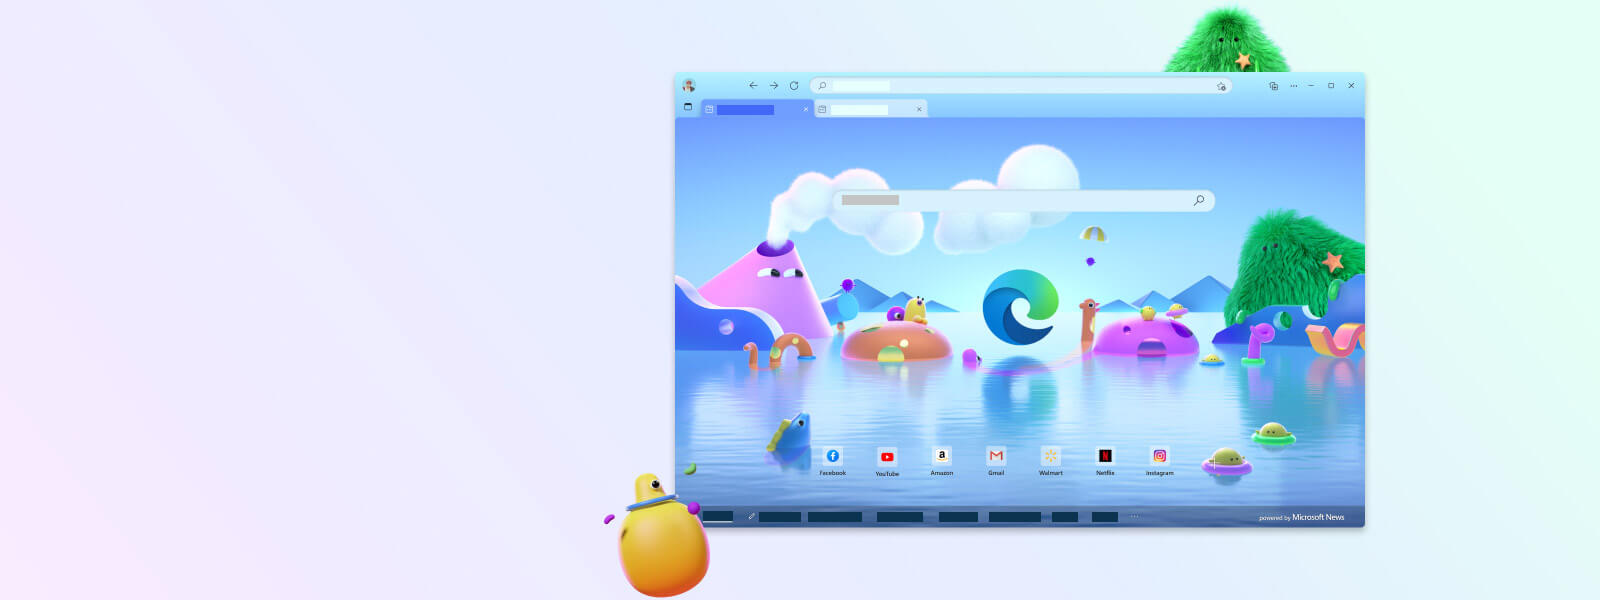 Microsoft Edge -selaimen näyttö, jossa on erilaisia lasten selaustilan piirroshahmoja